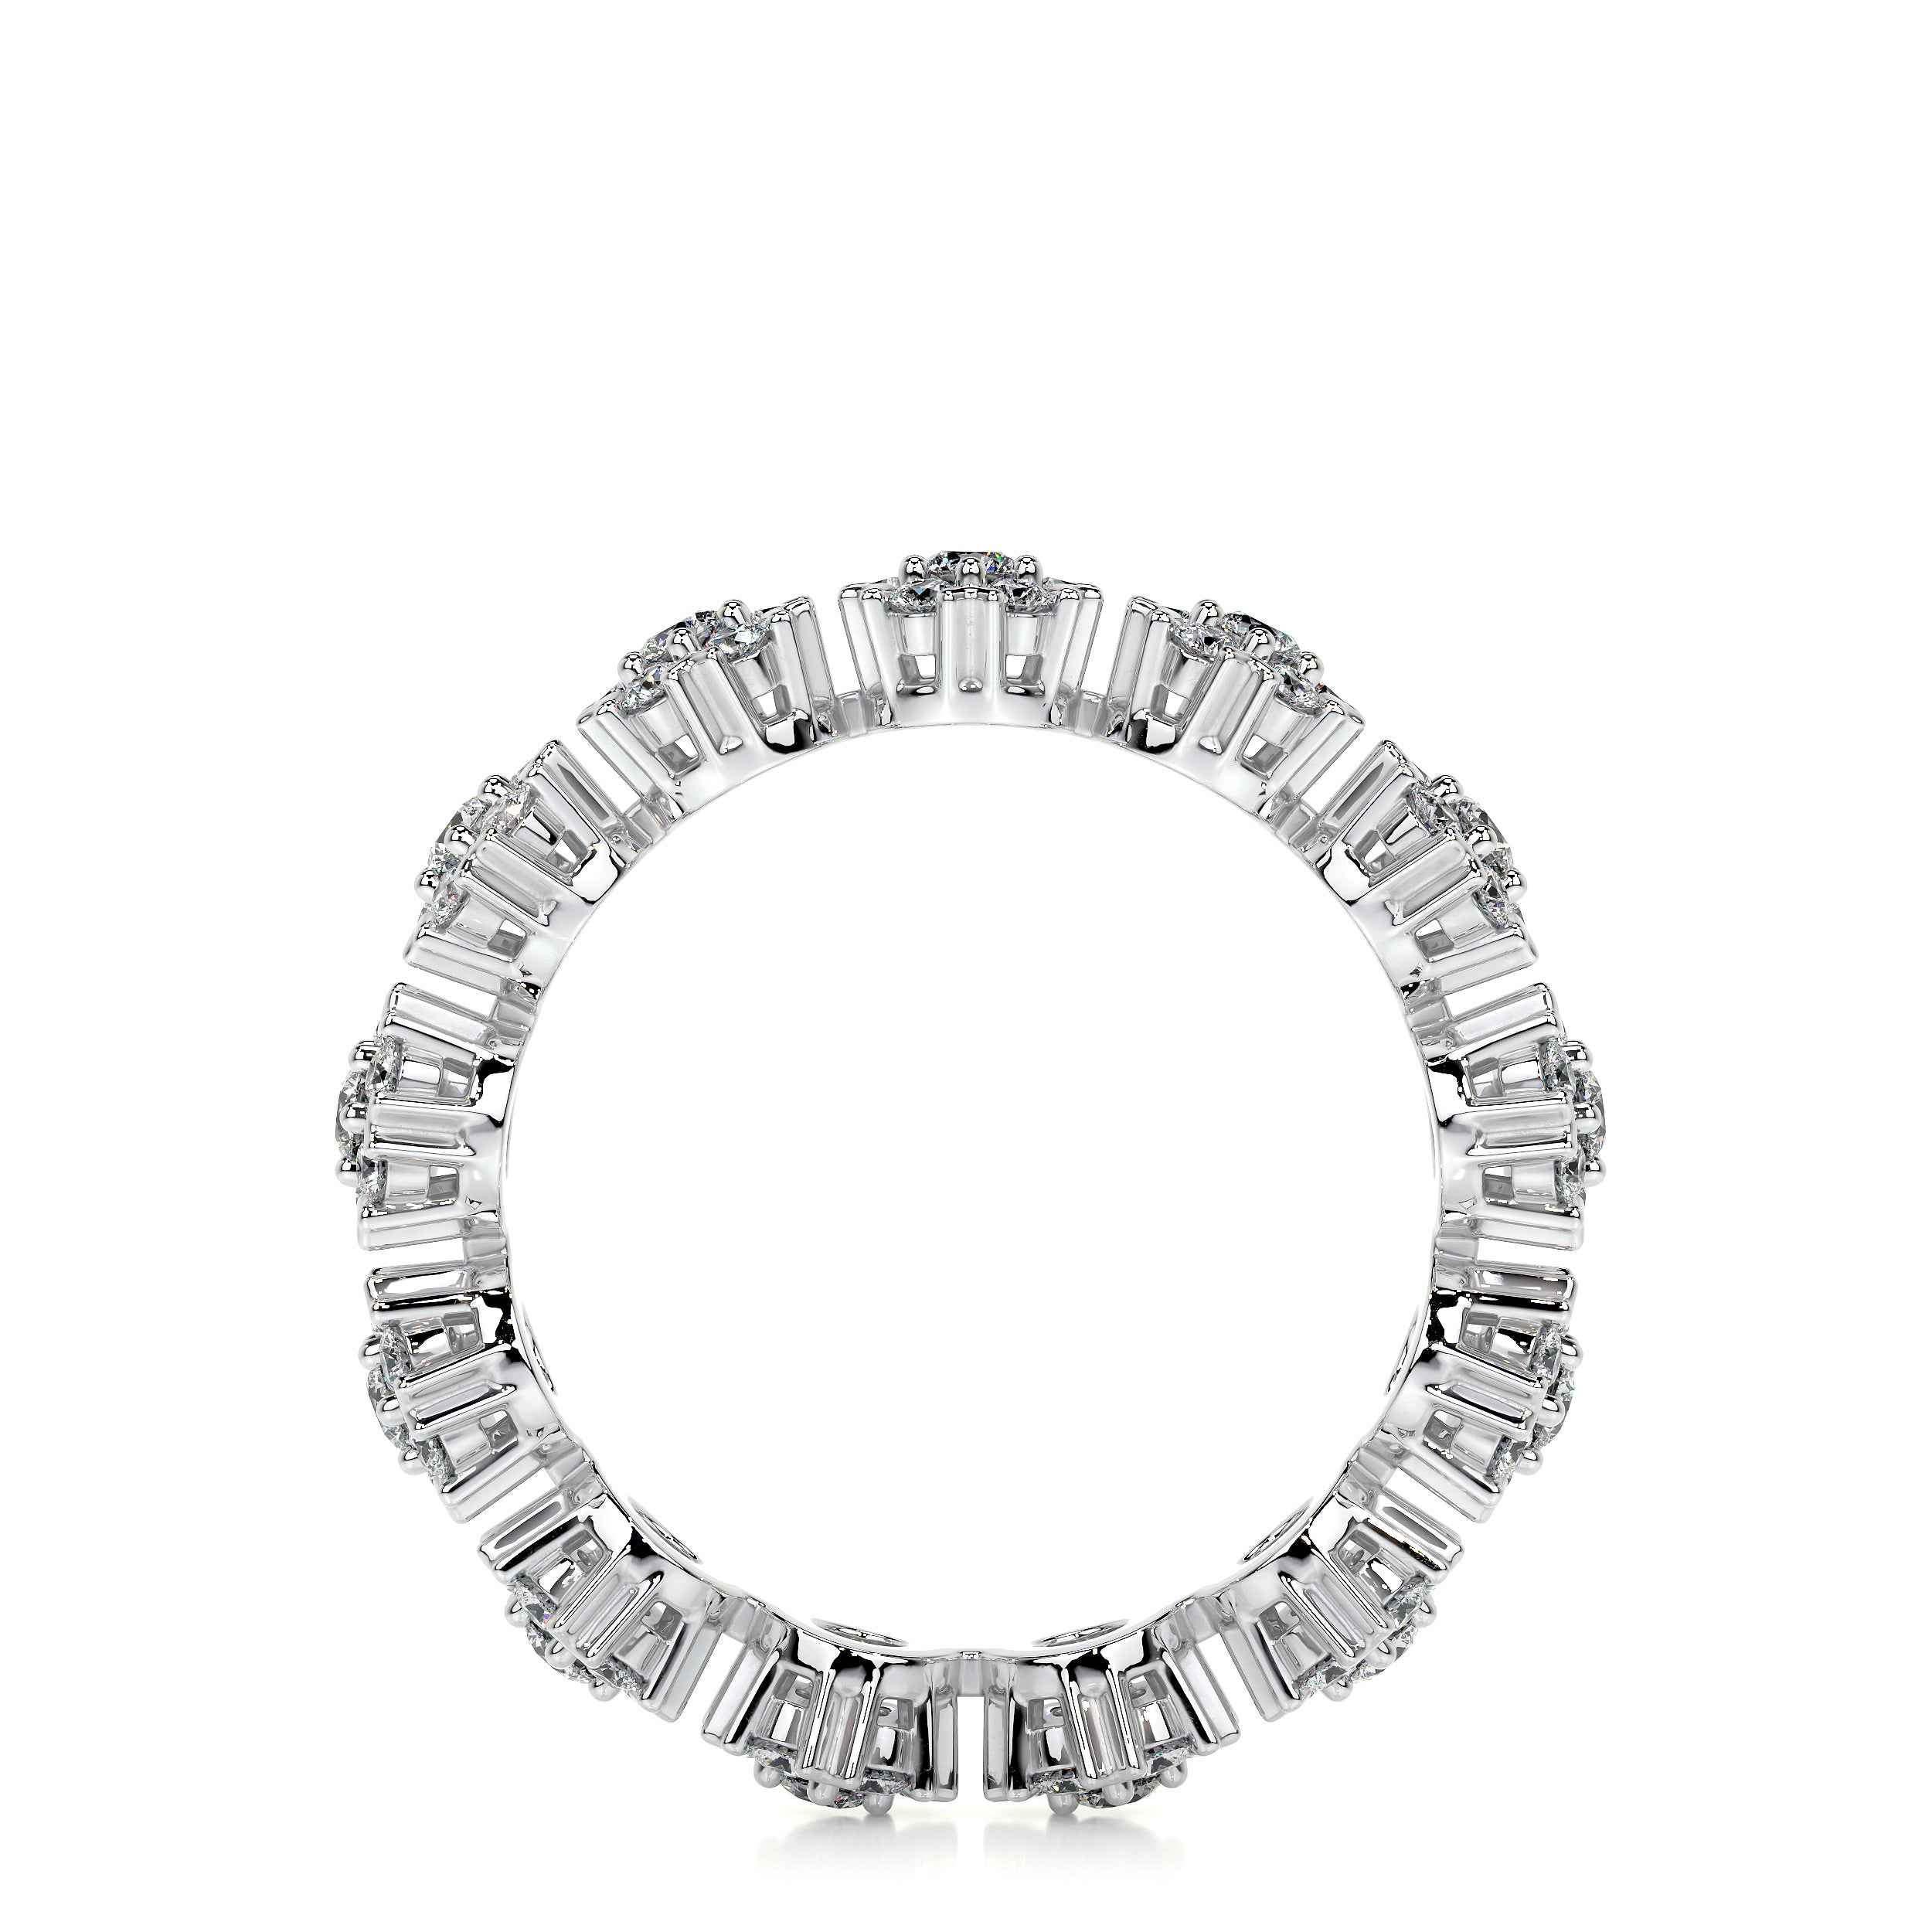 Holly Lab Grown Diamond Wedding Ring   (1 Carat) -18K White Gold